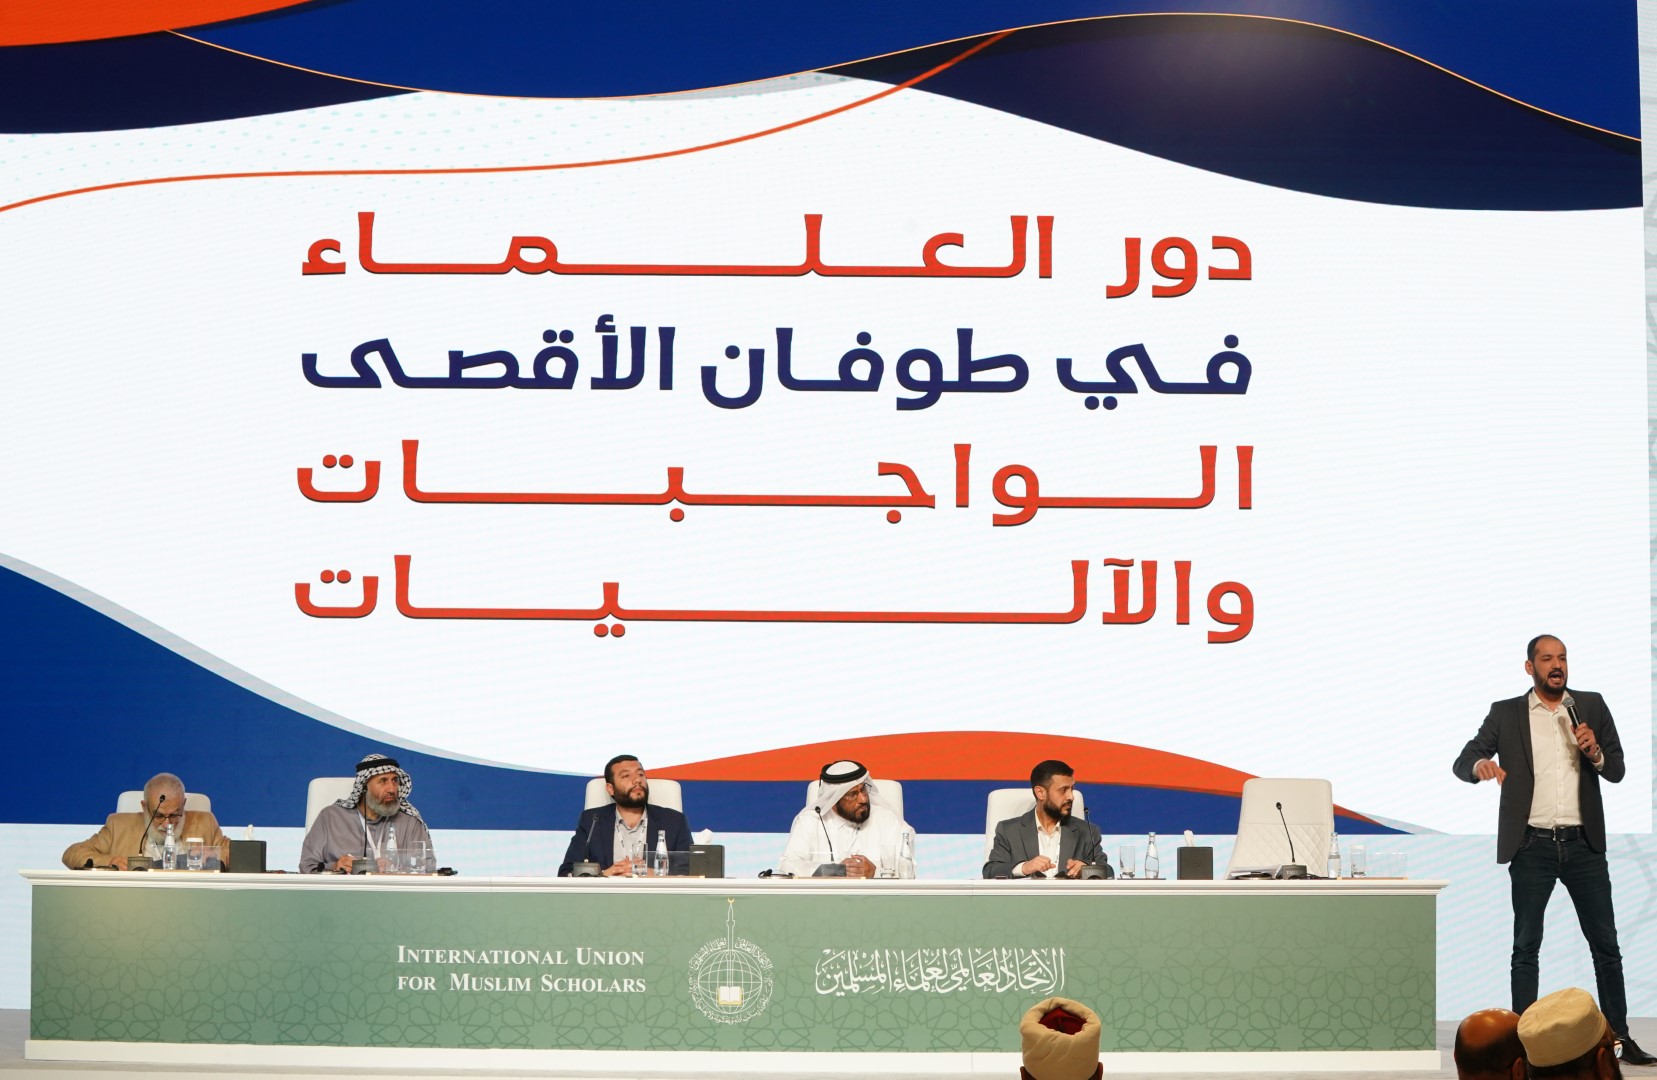 الهيئة تشارك في اجتماع الجمعية العمومية للاتحاد العالمي لعلماء المسلمين